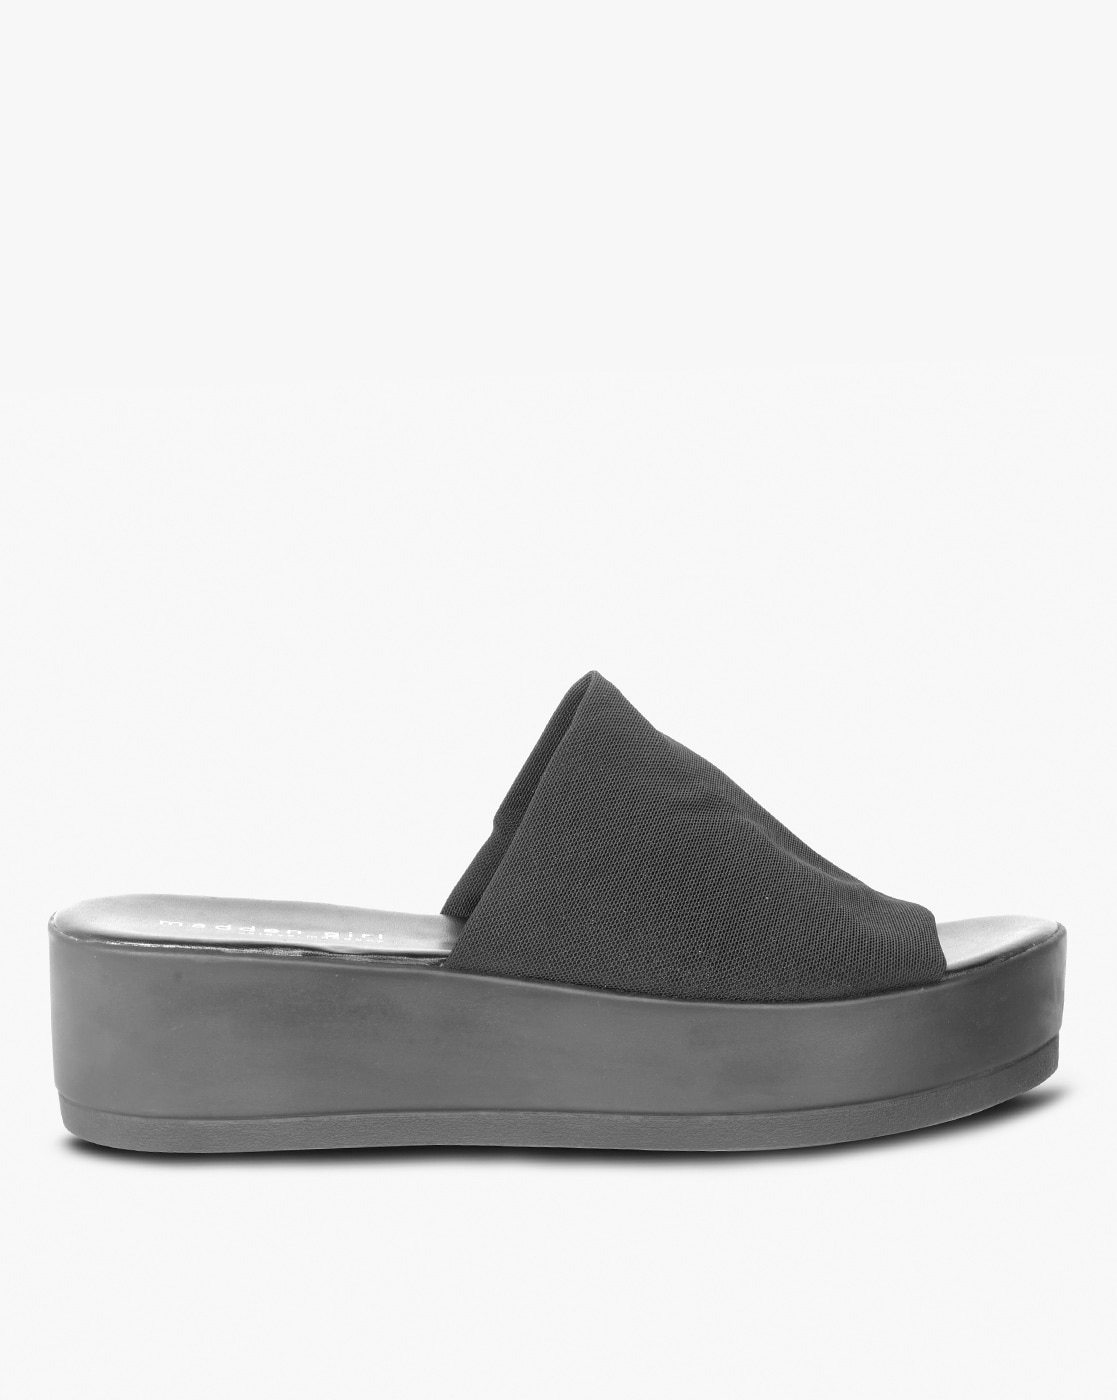 flatform black sandals